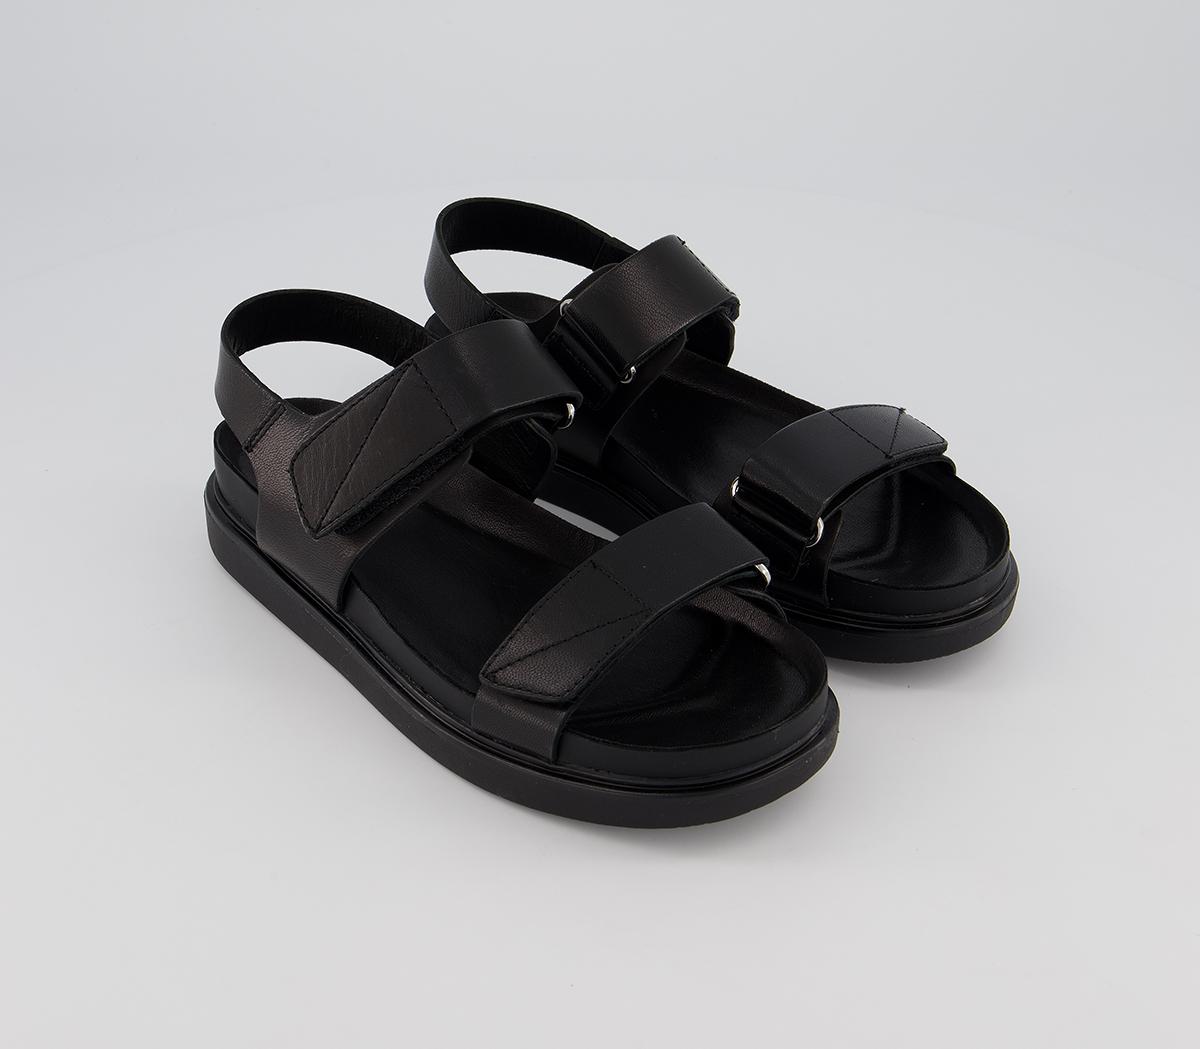 Vagabond Shoemakers Erin Double Strap Sandals Black - Women’s Sandals